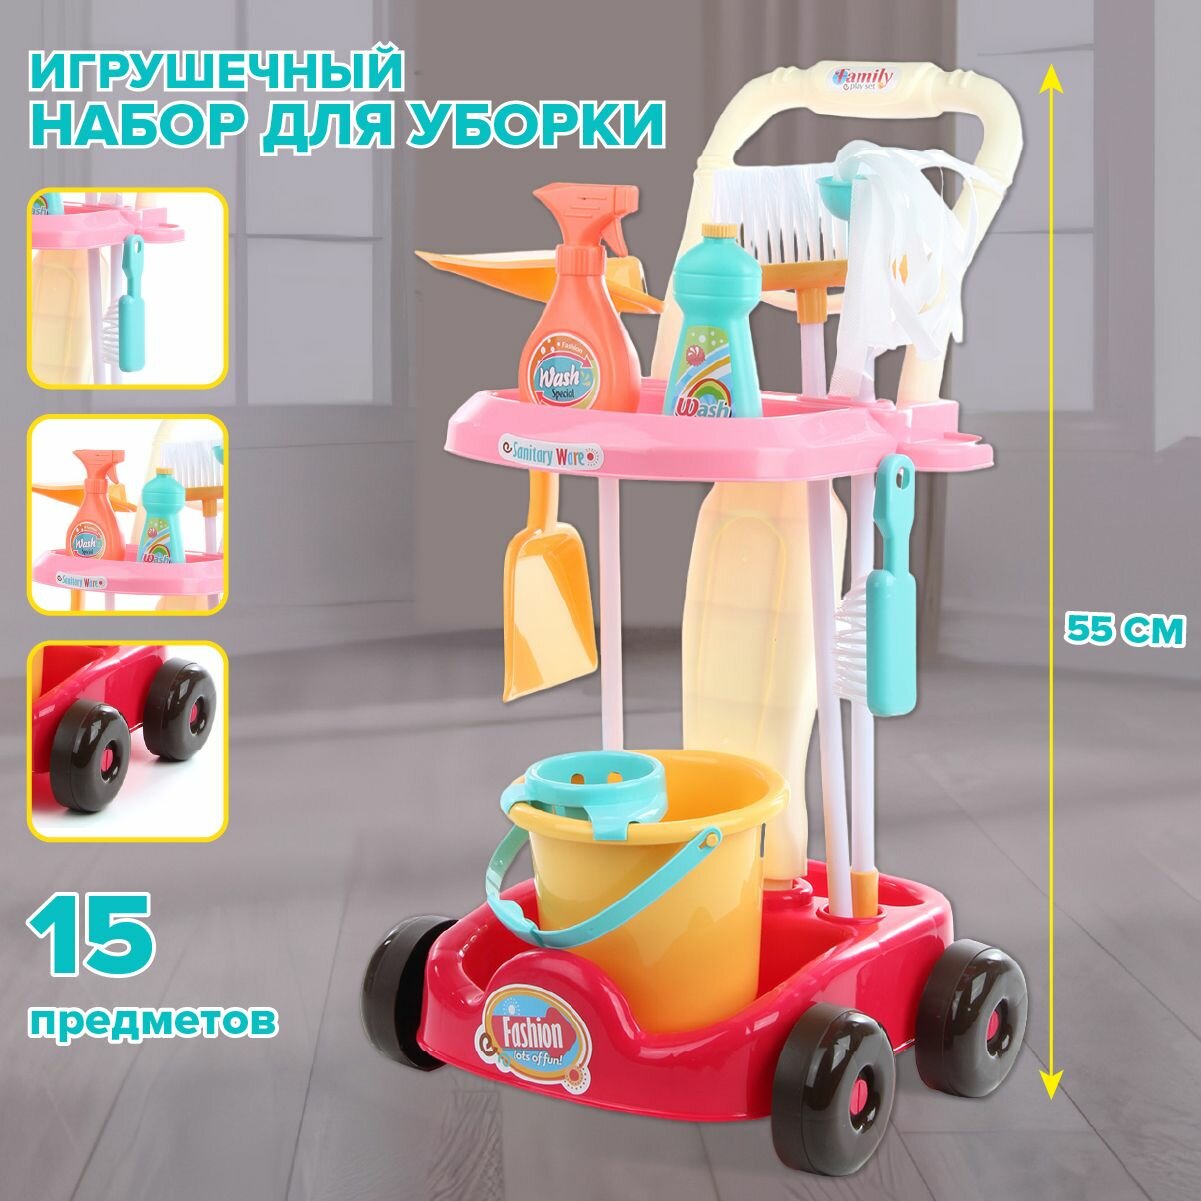 Детский игровой набор для уборки, Veld Co / Игрушечные инструменты для чистки дома